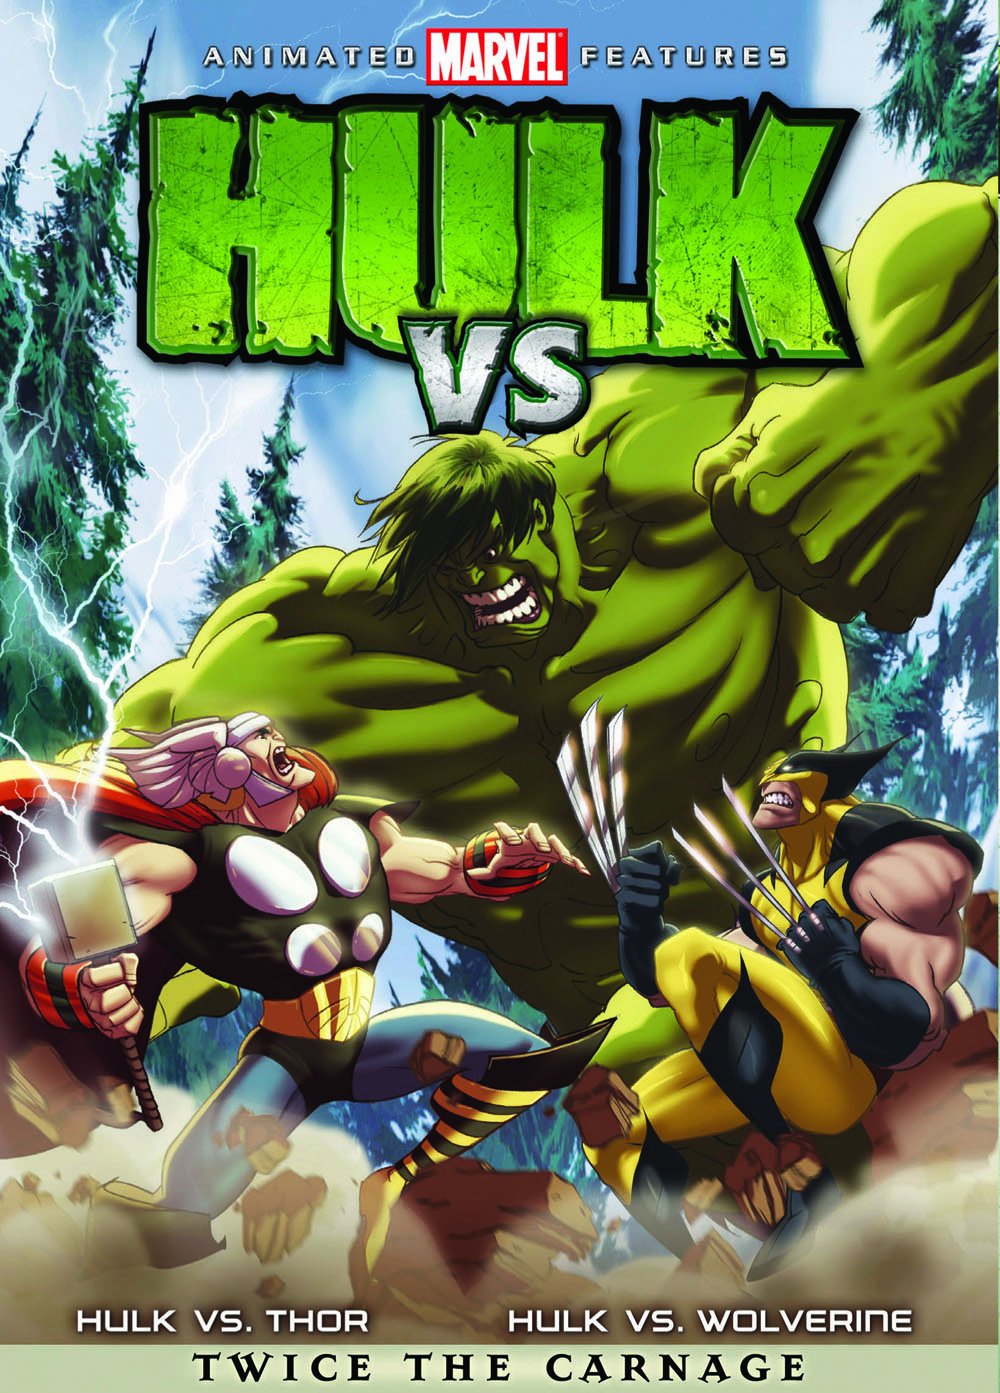 Hulk Vs. [Marvel 616 cartoon]